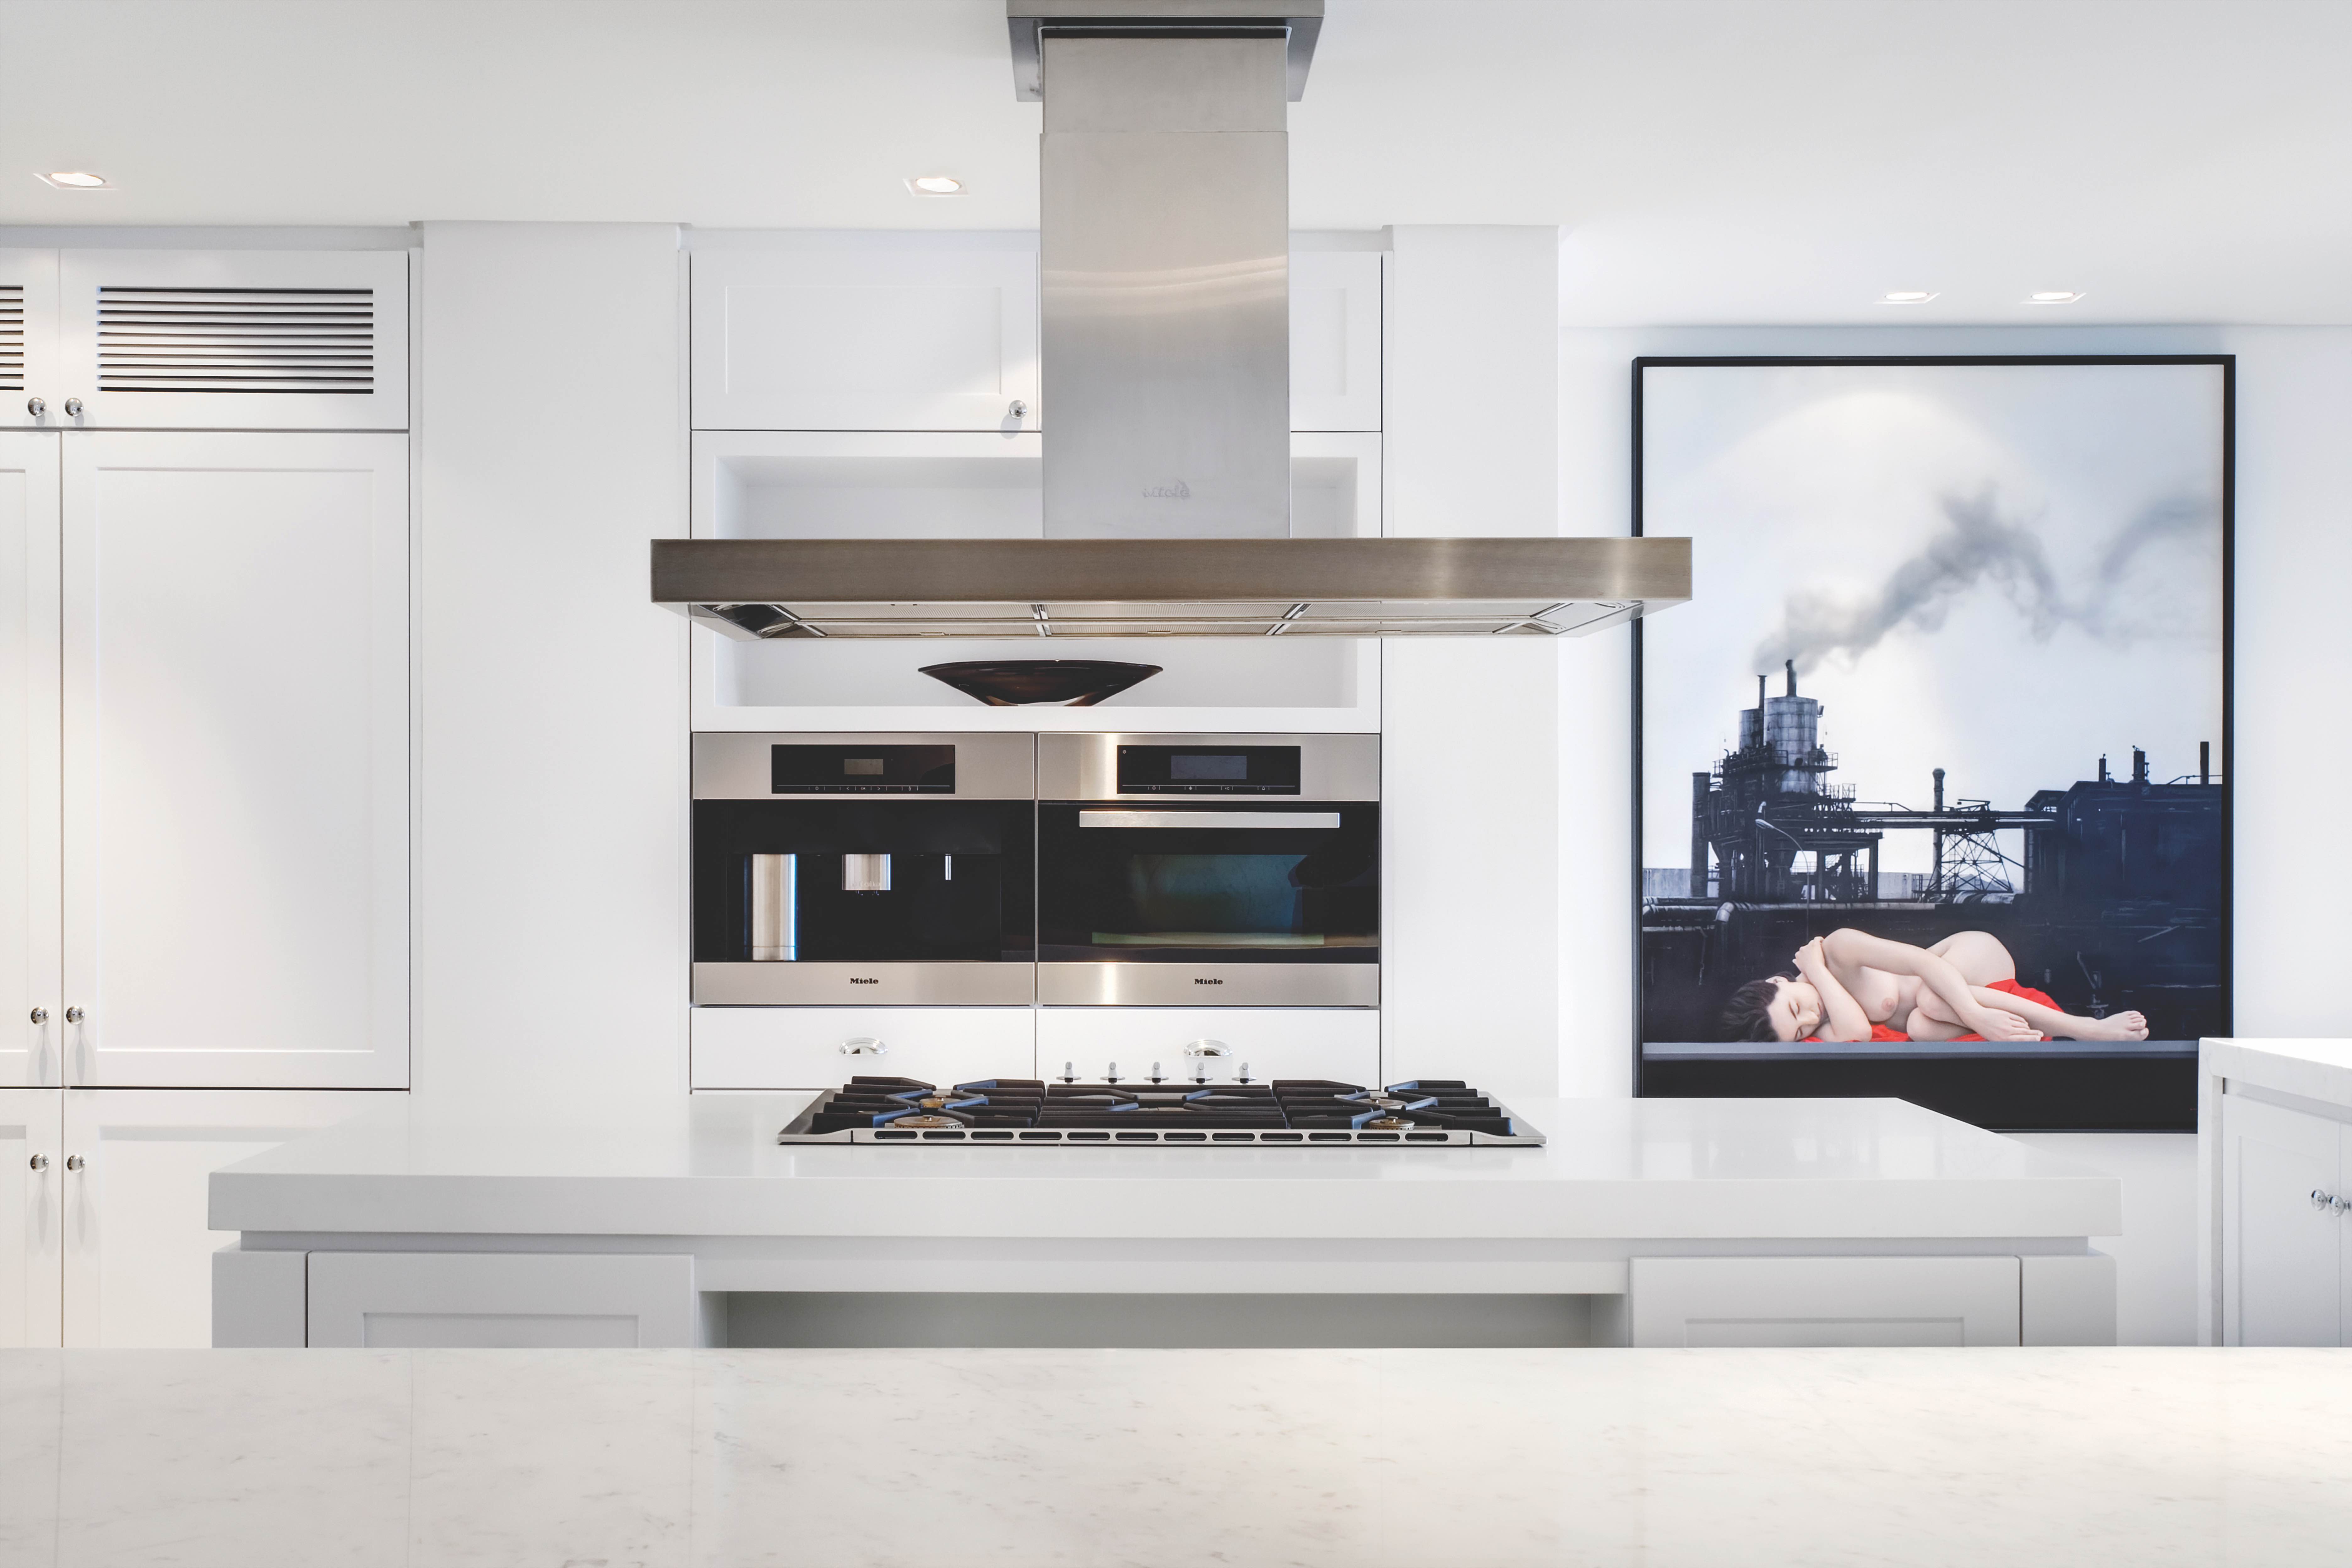 一樓廚房也採白色主題，創造出簡約的度假生活方式。